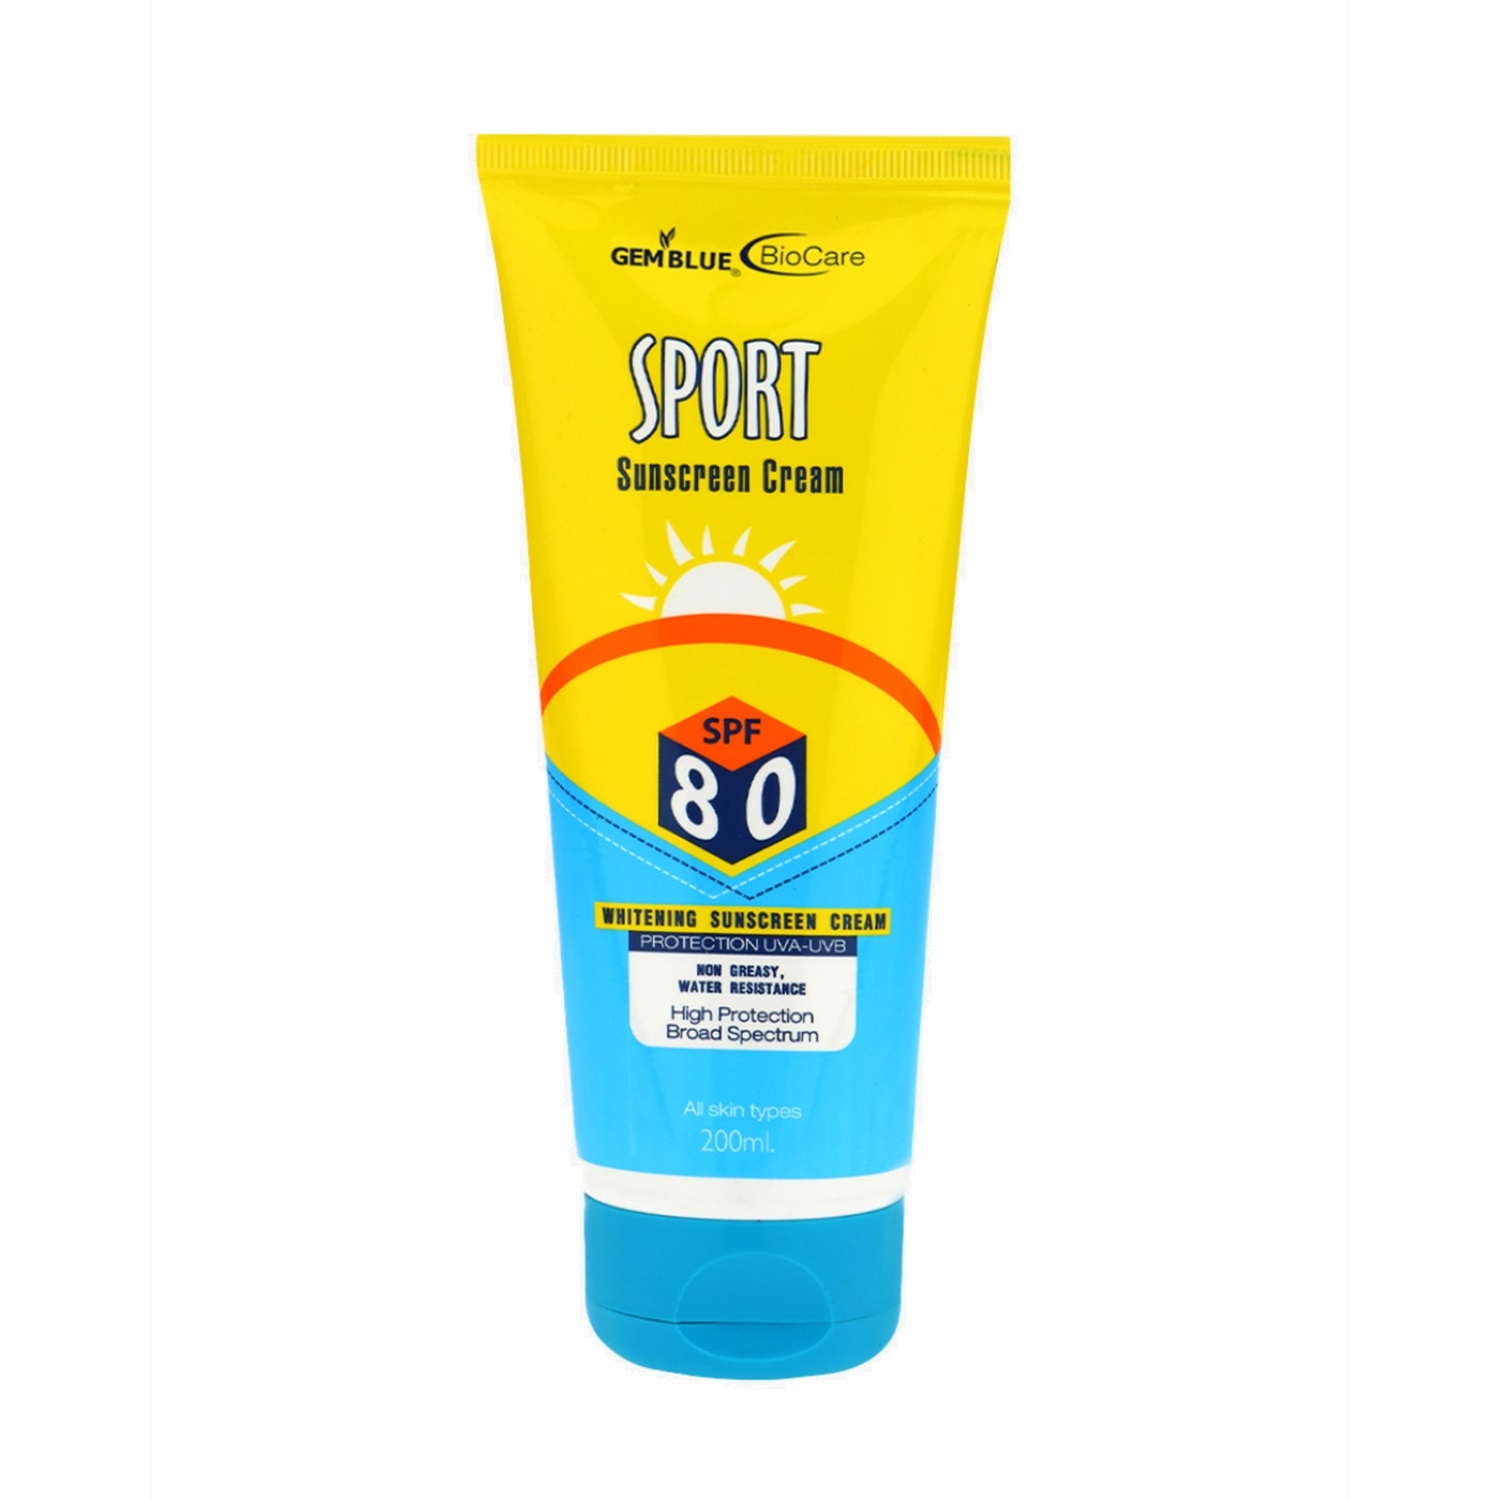 Gemblue Biocare | Gemblue Biocare Suncoat Sunscreen Cream SPF 80 (200ml)